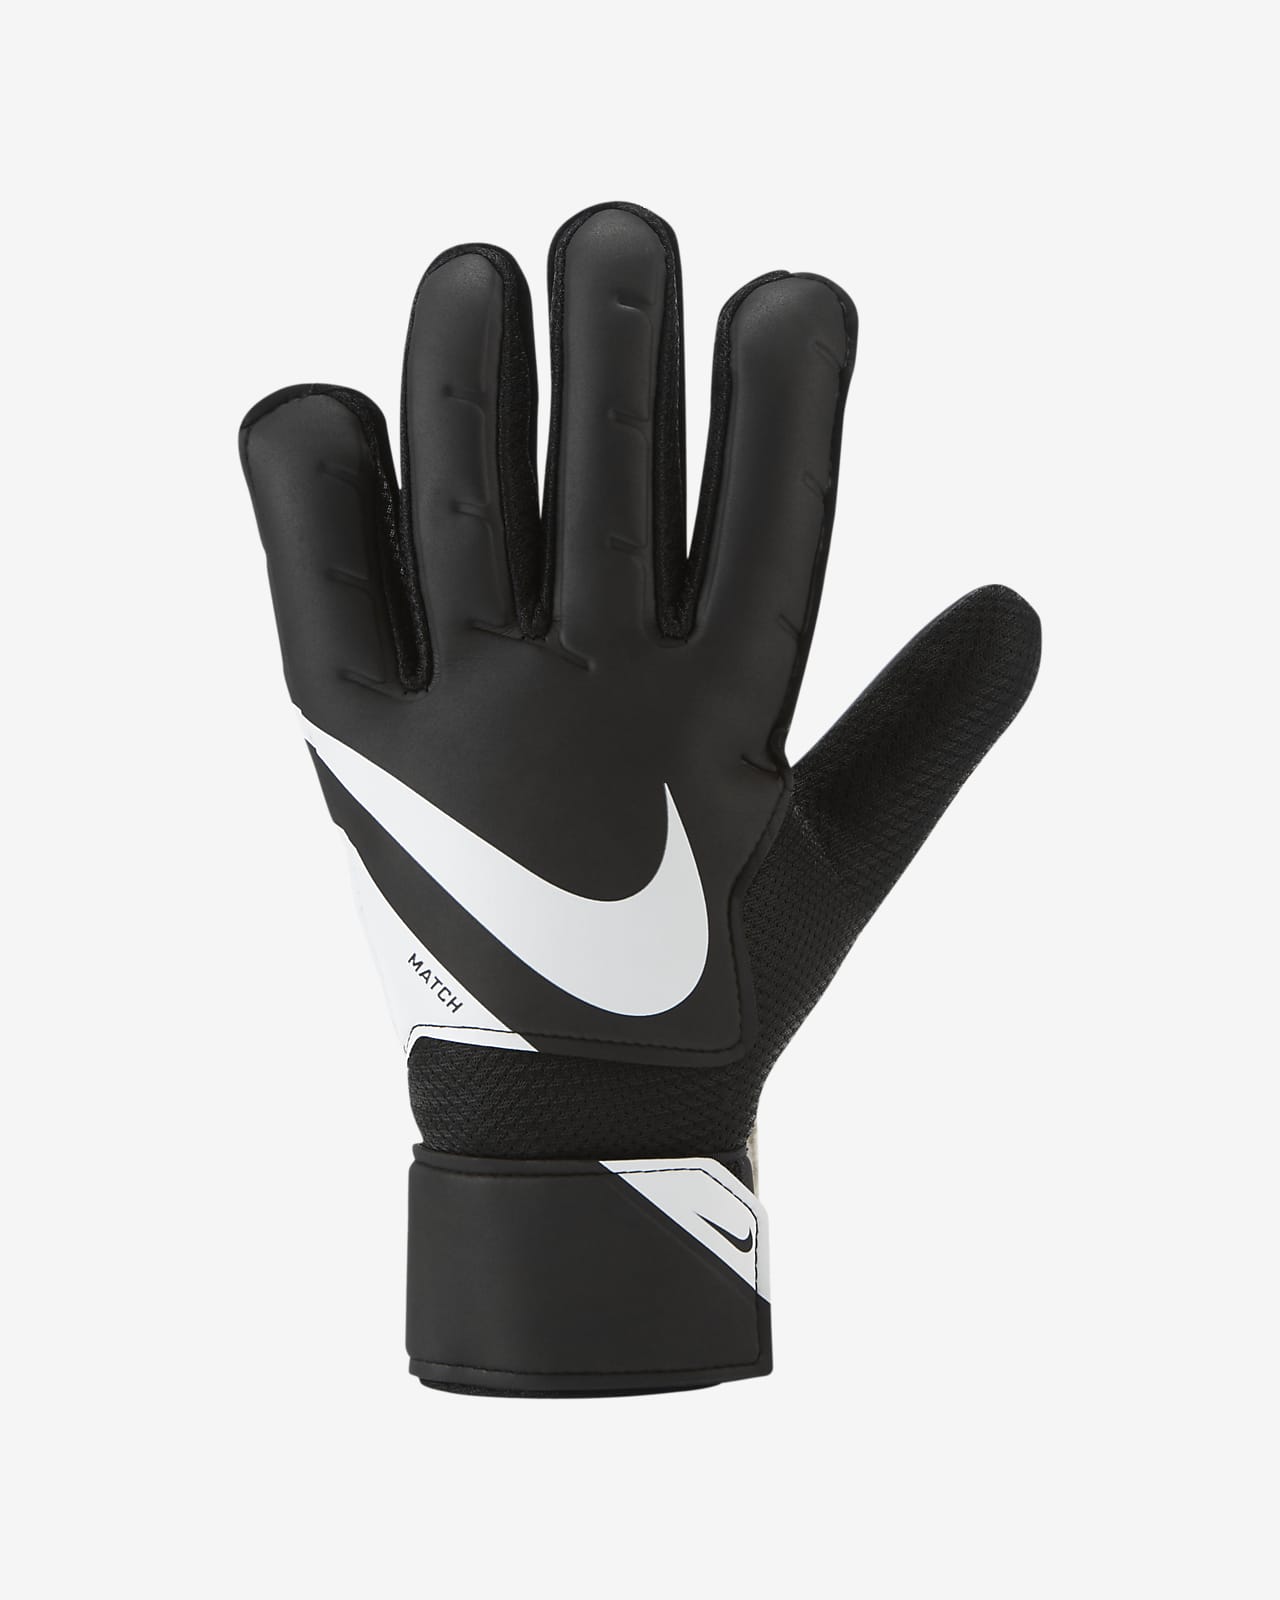 Nike公式 ナイキ ゴールキーパー マッチ サッカーグローブ オンラインストア 通販サイト